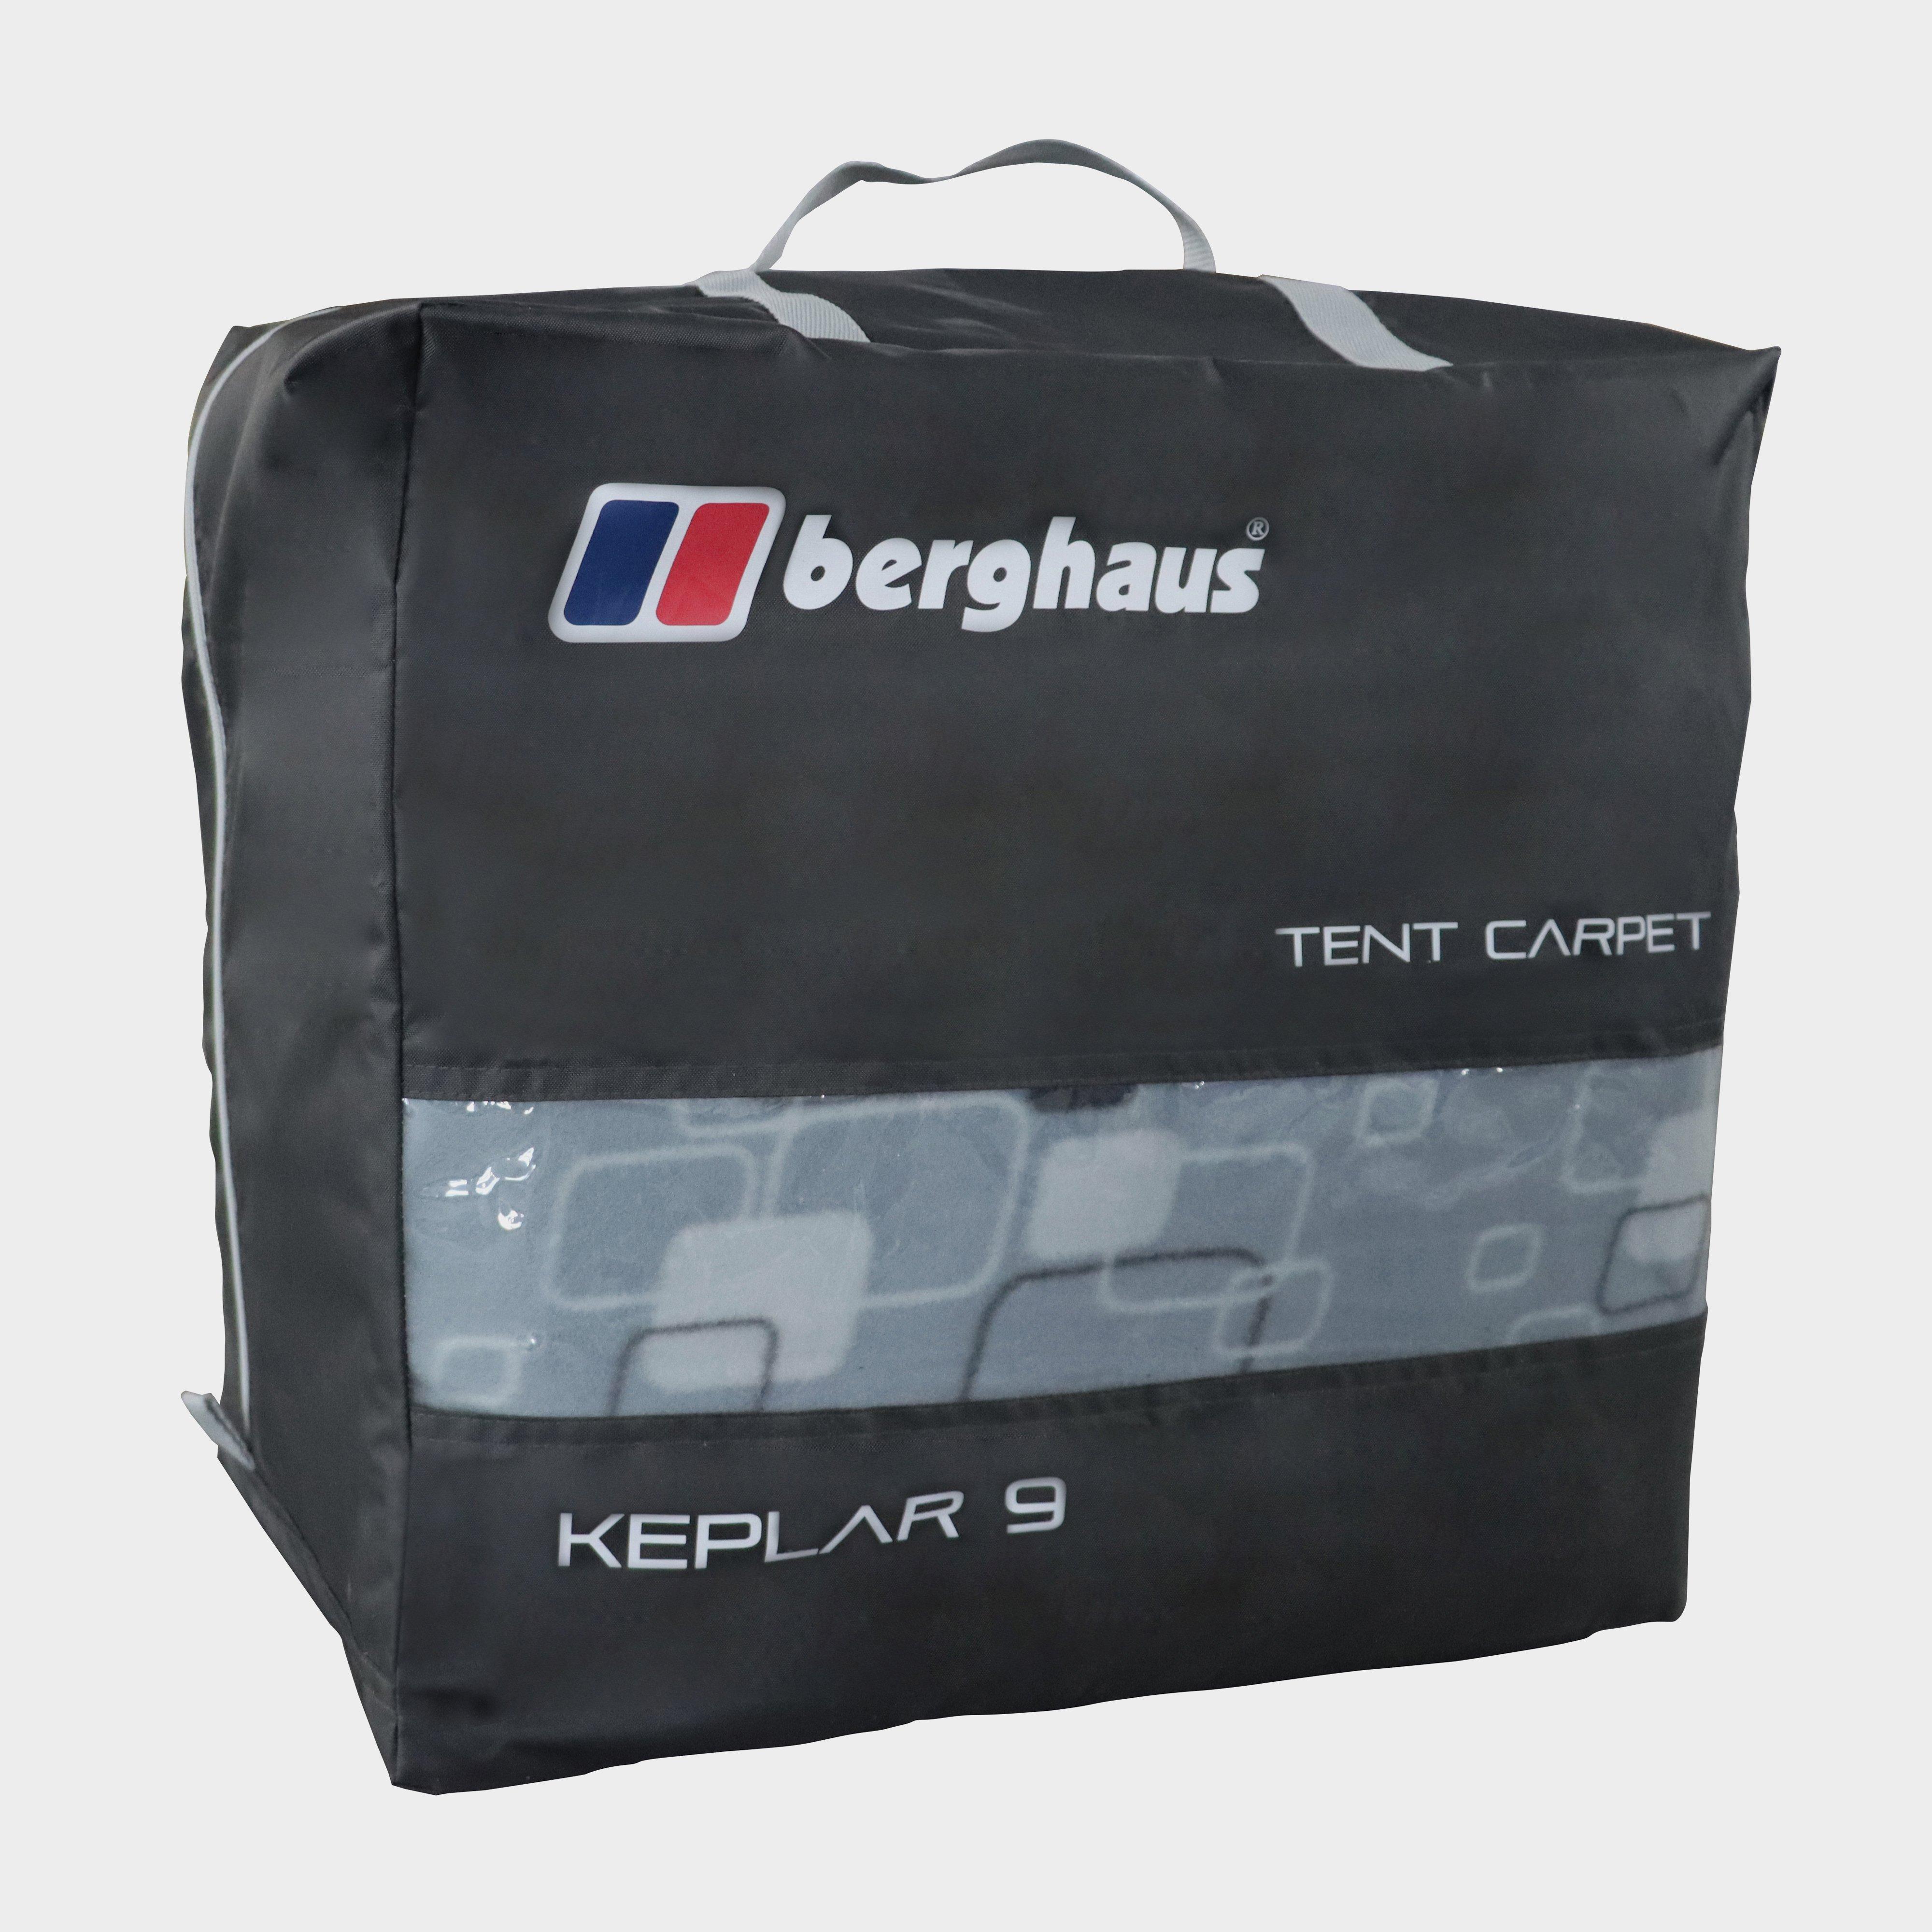  Berghaus Kepler 9 Tent Carpet, Black